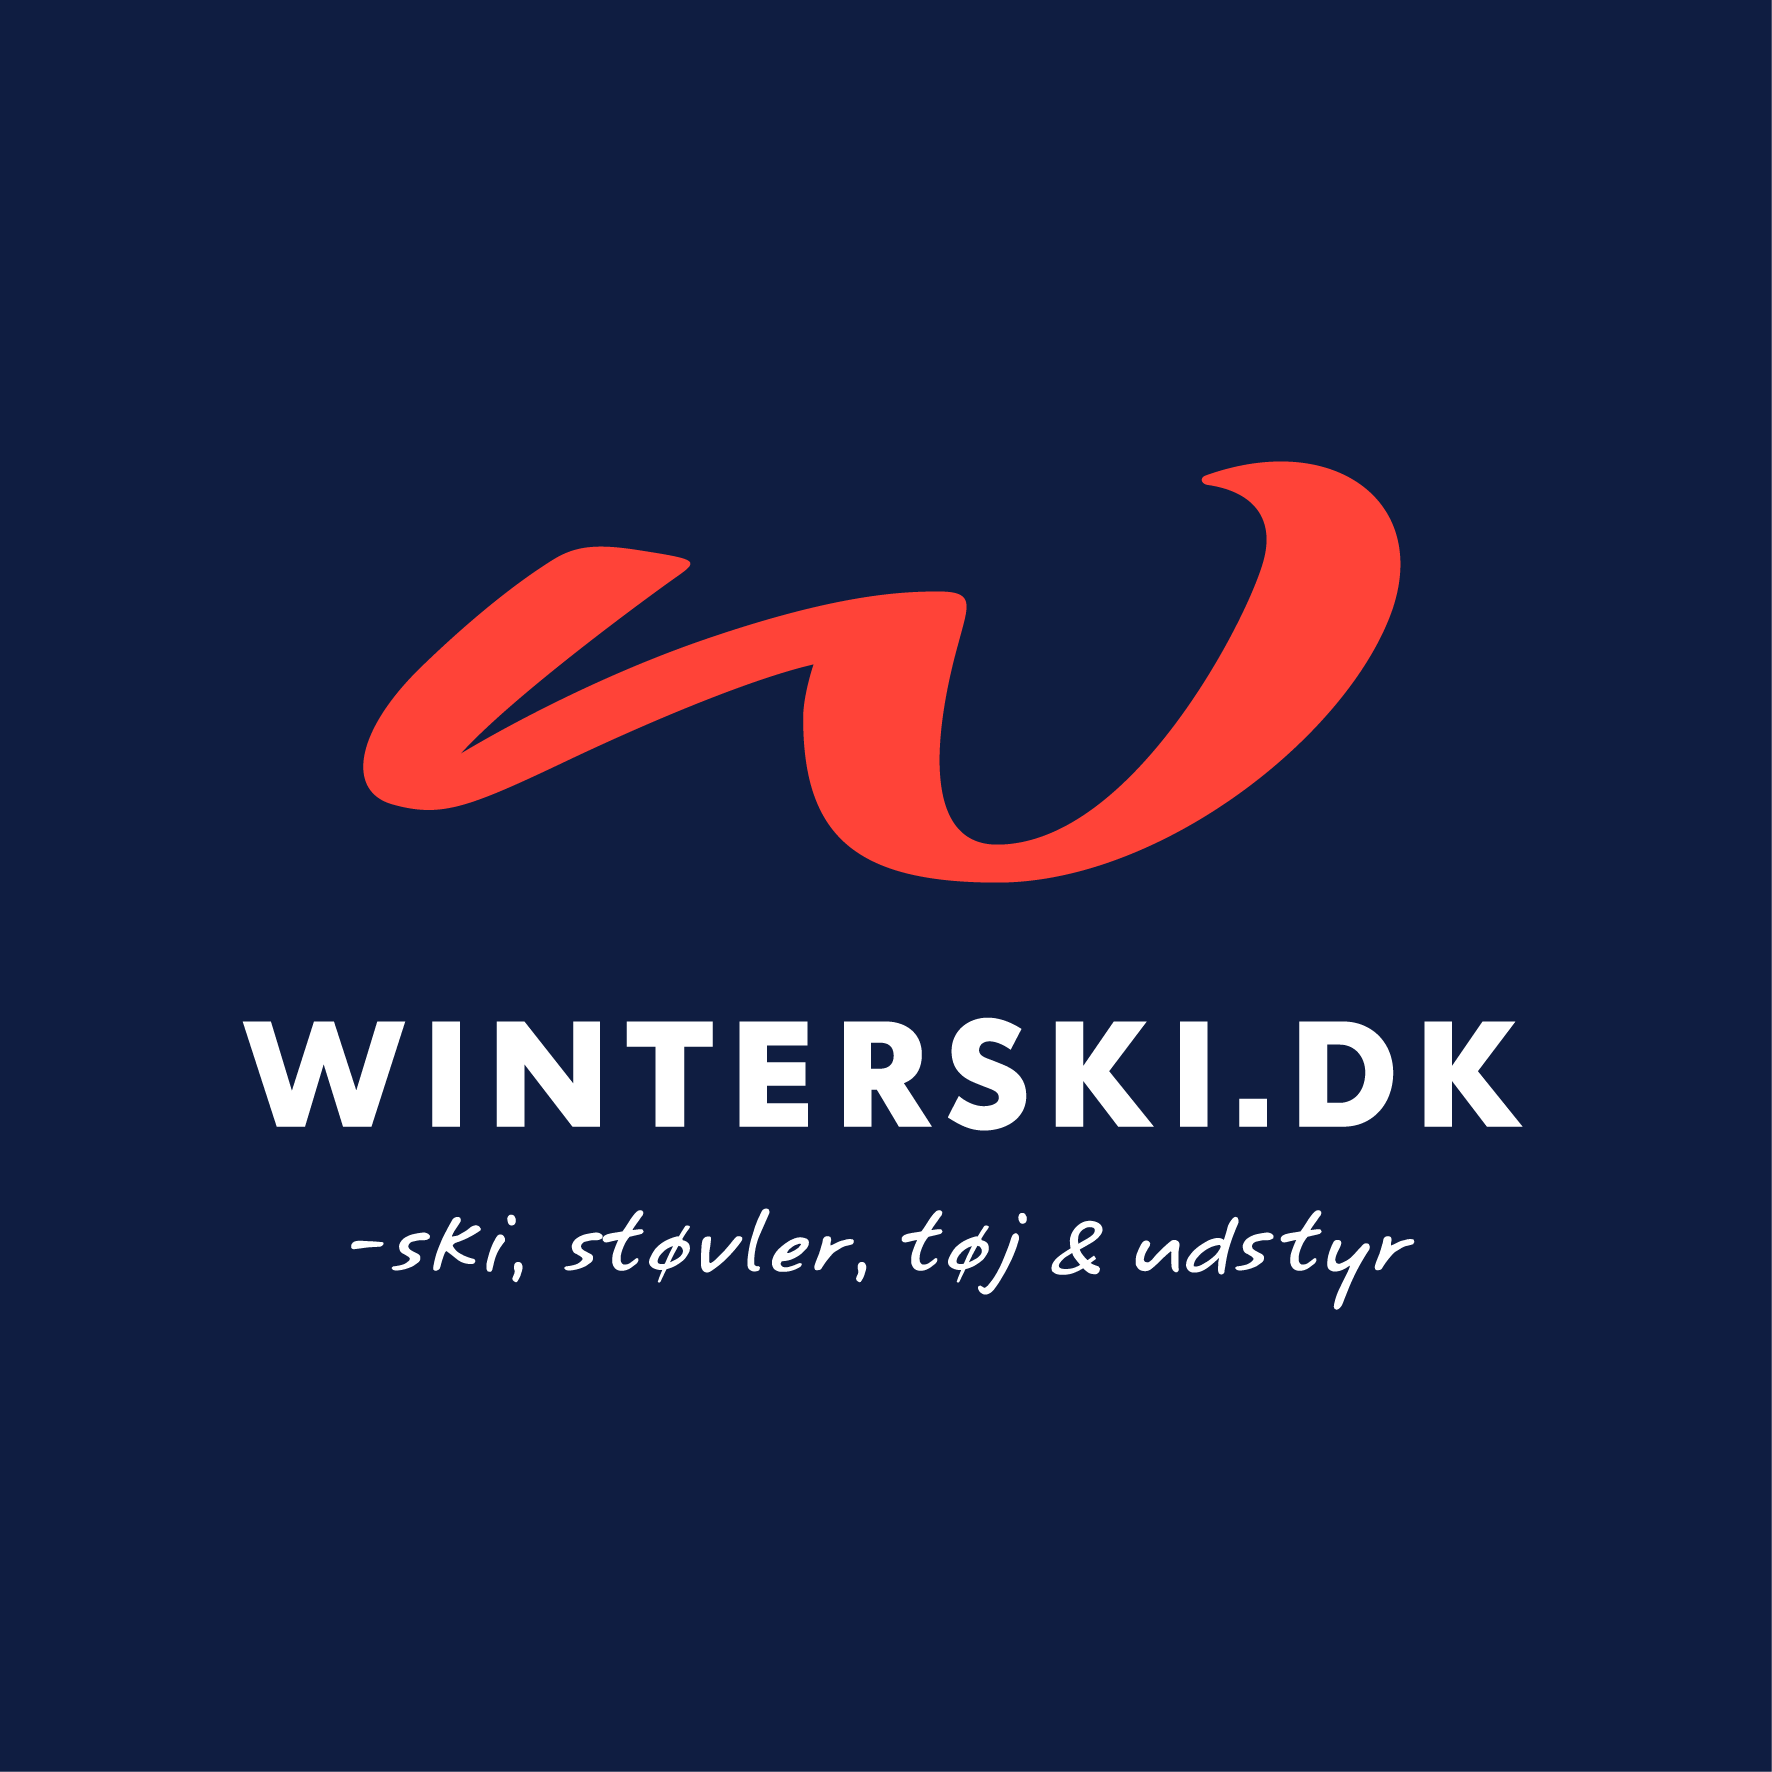 Winterski.dk